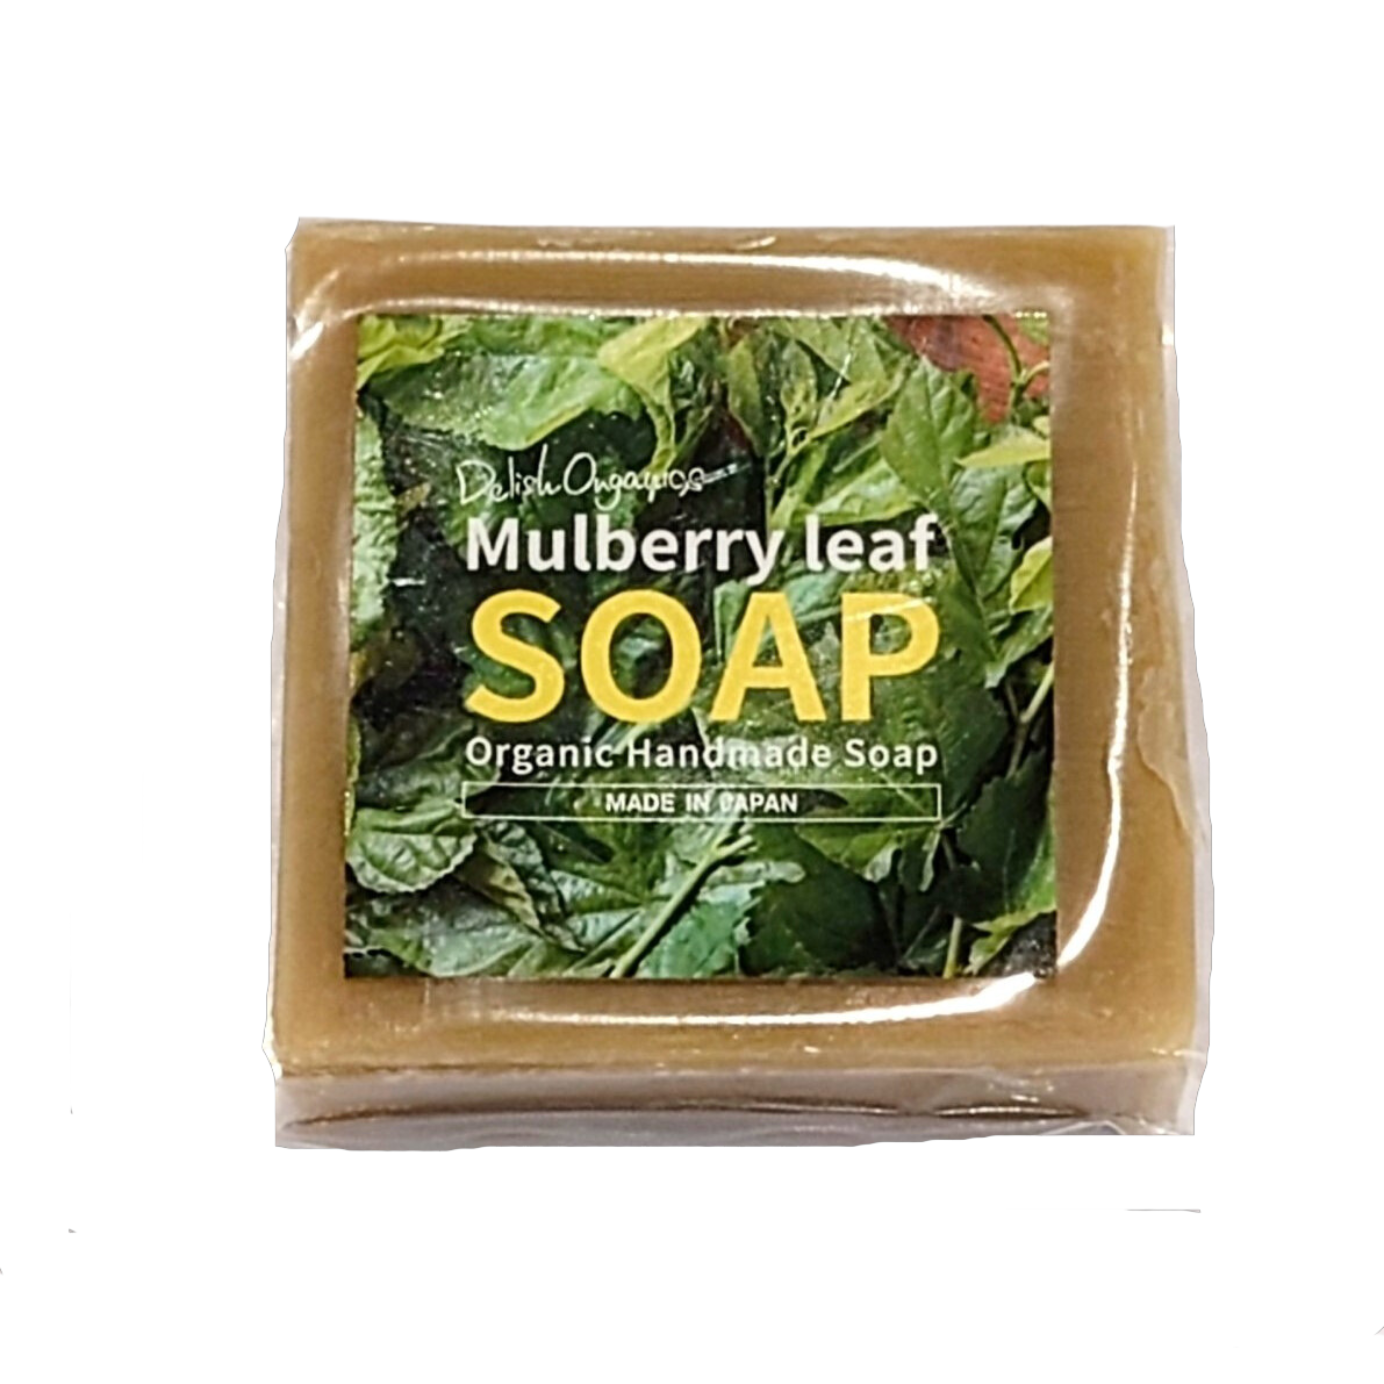 Delish Organics Mulberry leaf SOAP